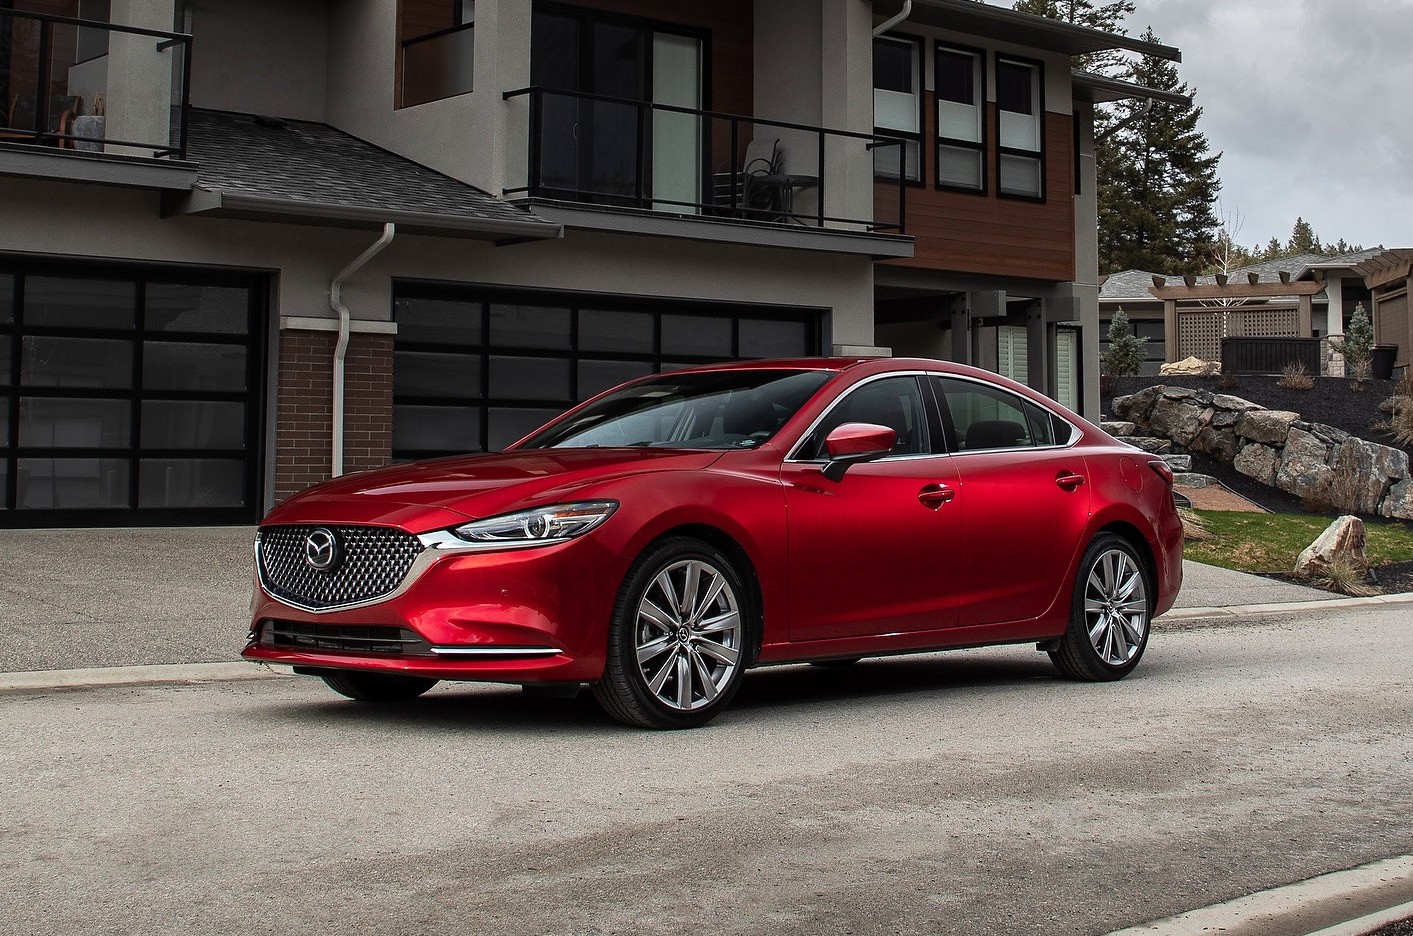 Nuova Mazda 6 2020 prezzi, motori, versioni, consumi, dotazioni nuova auto